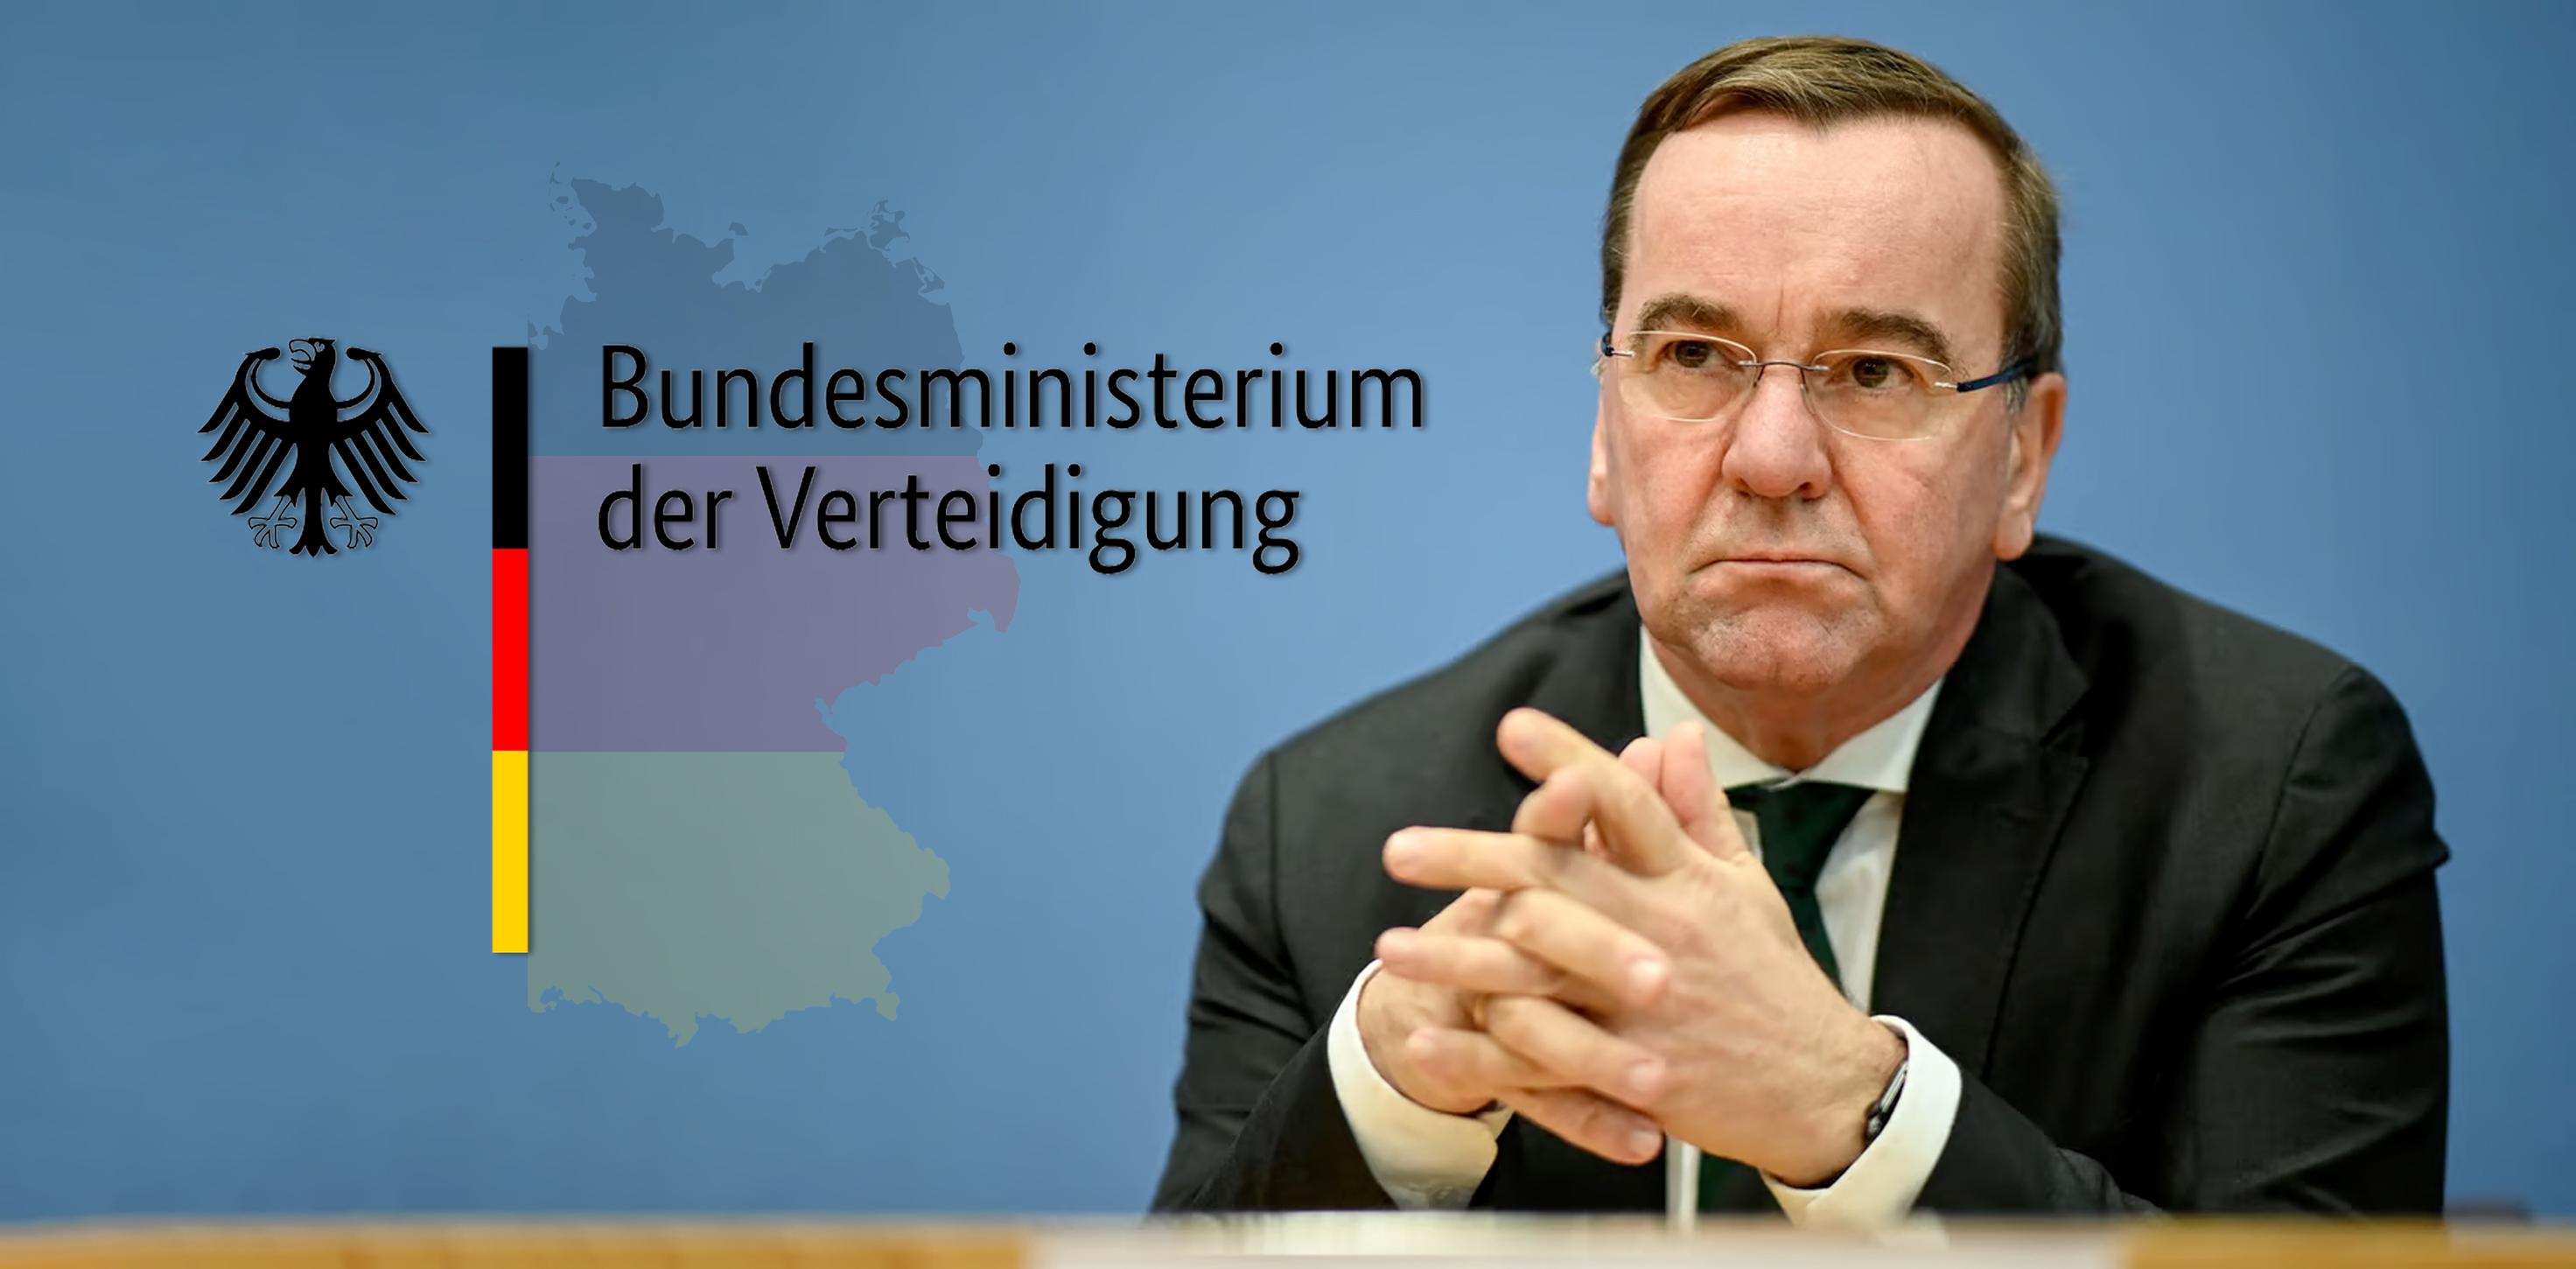 التحديات التي تواجه وزير الدفاع الألماني الجديد